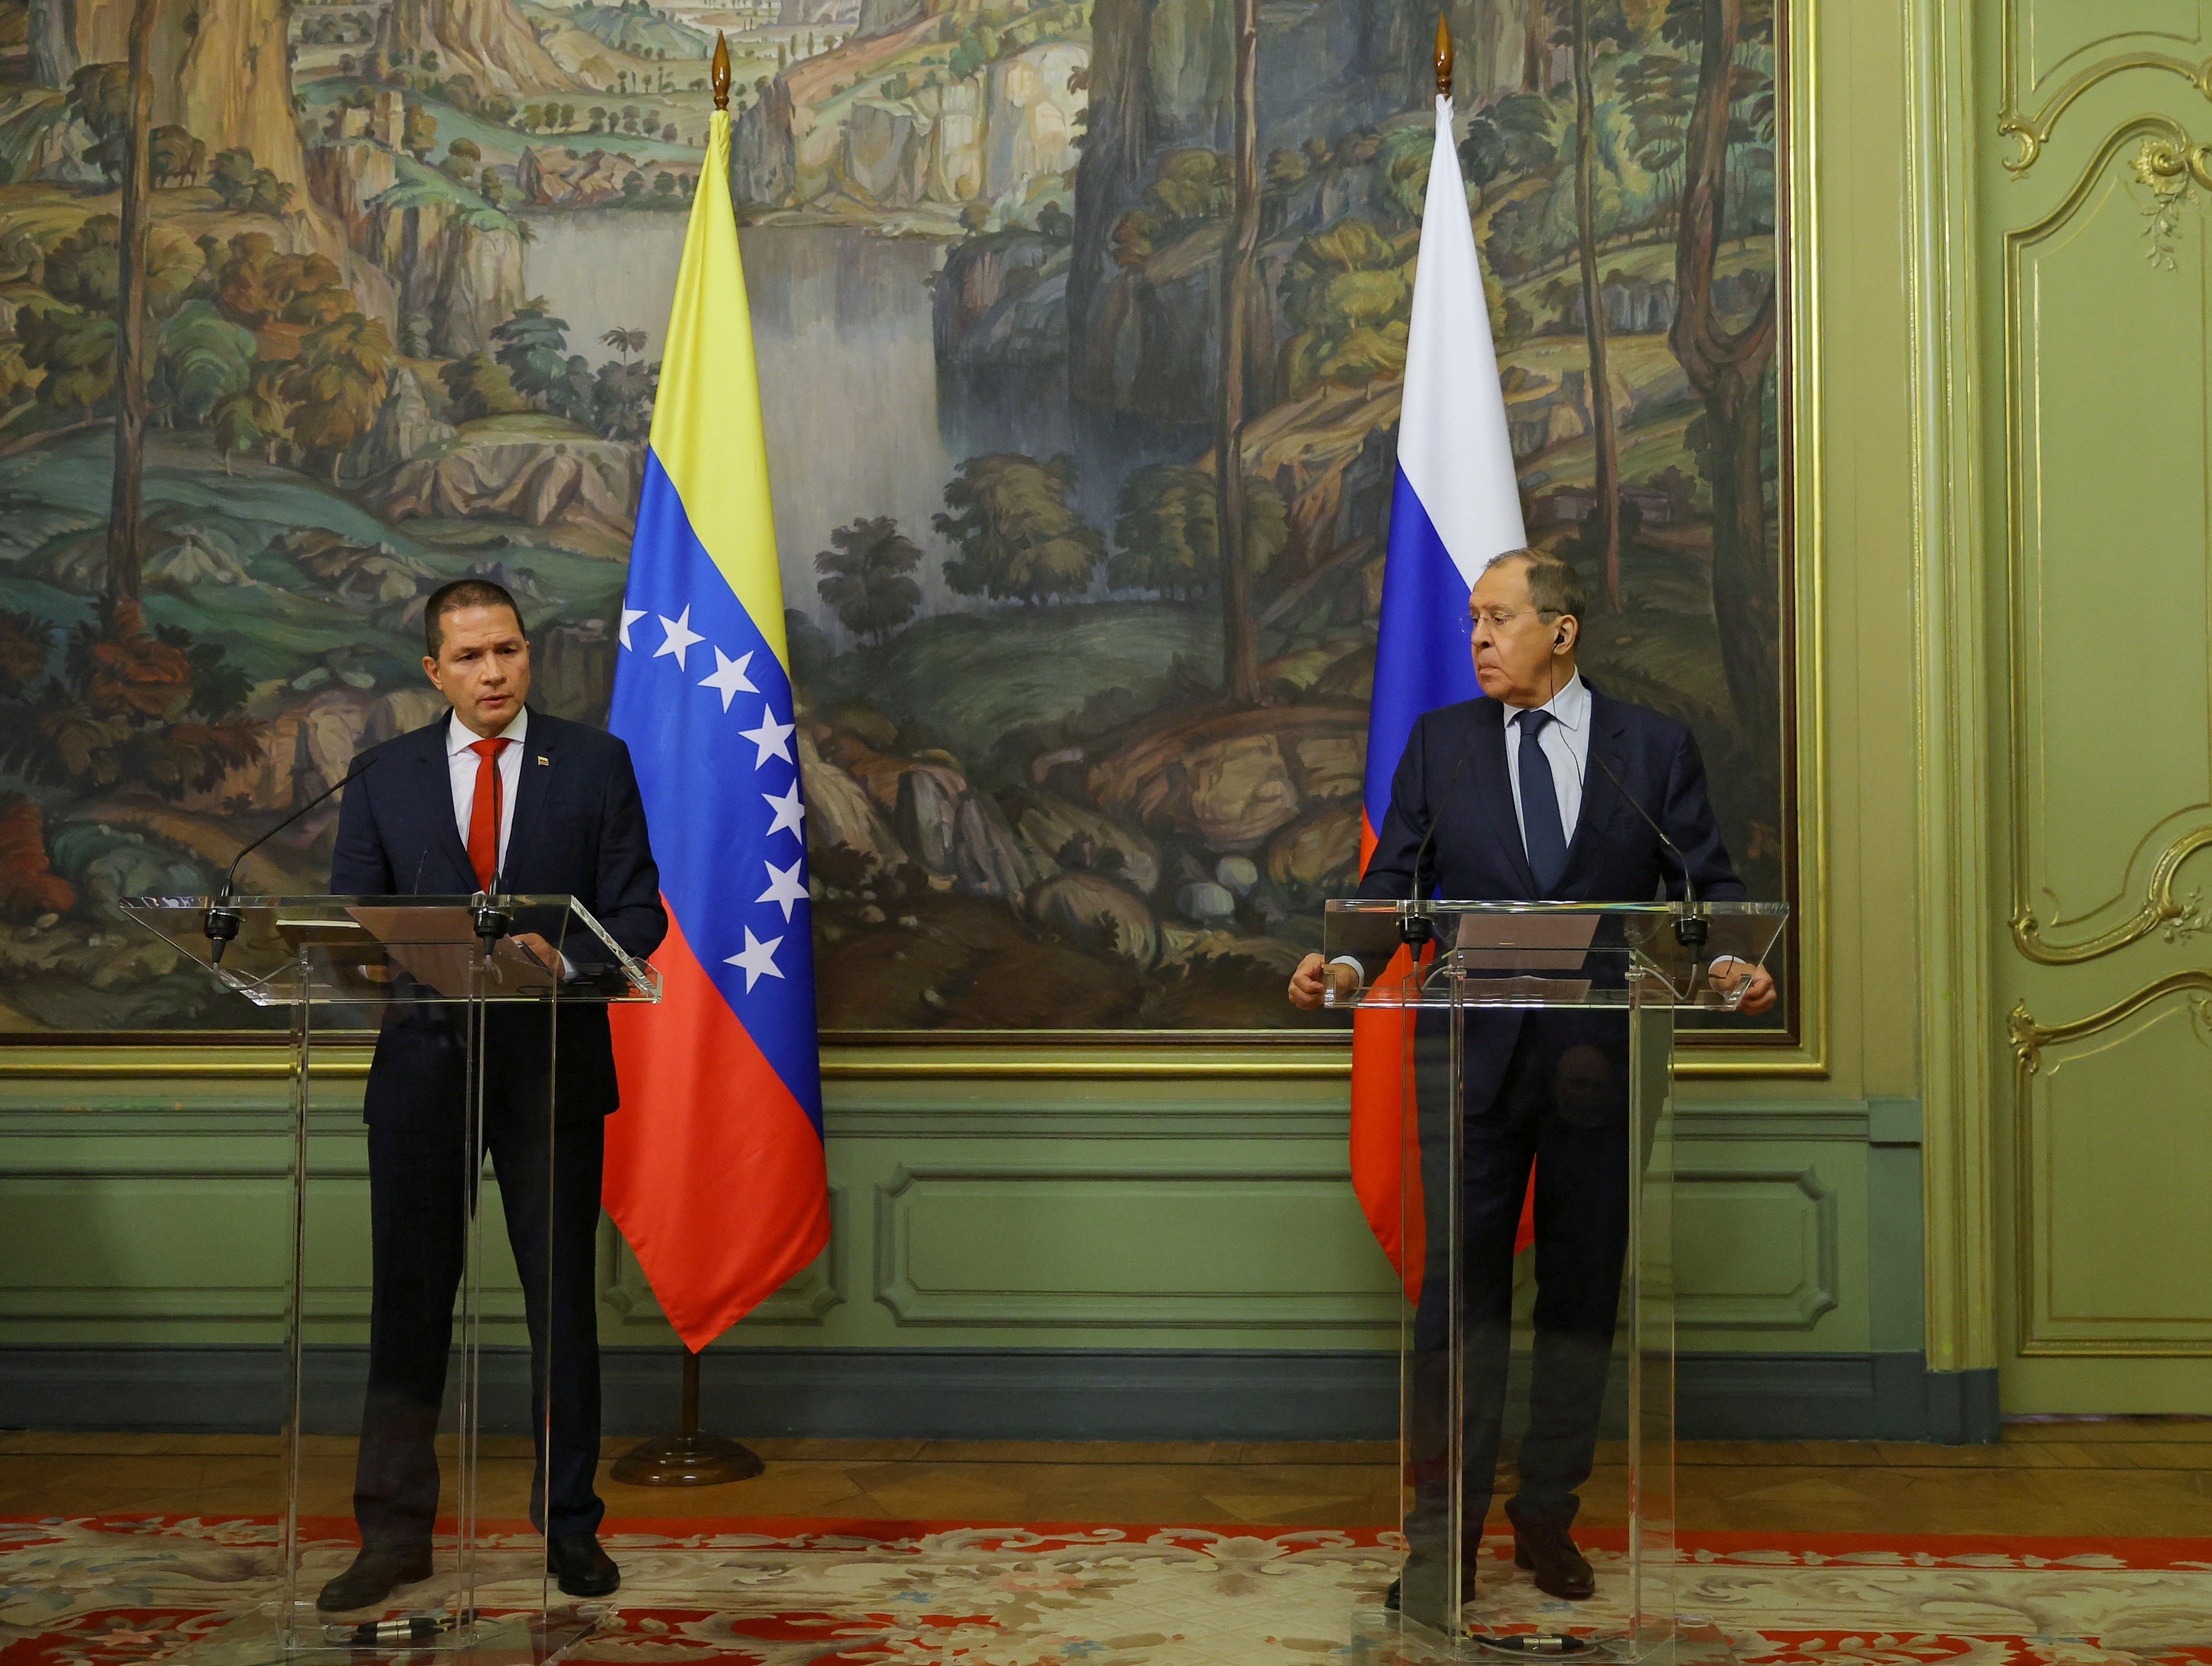 La oposición venezolana calificó como una vergüenza las alianzas entre el régimen de Maduro con Rusia